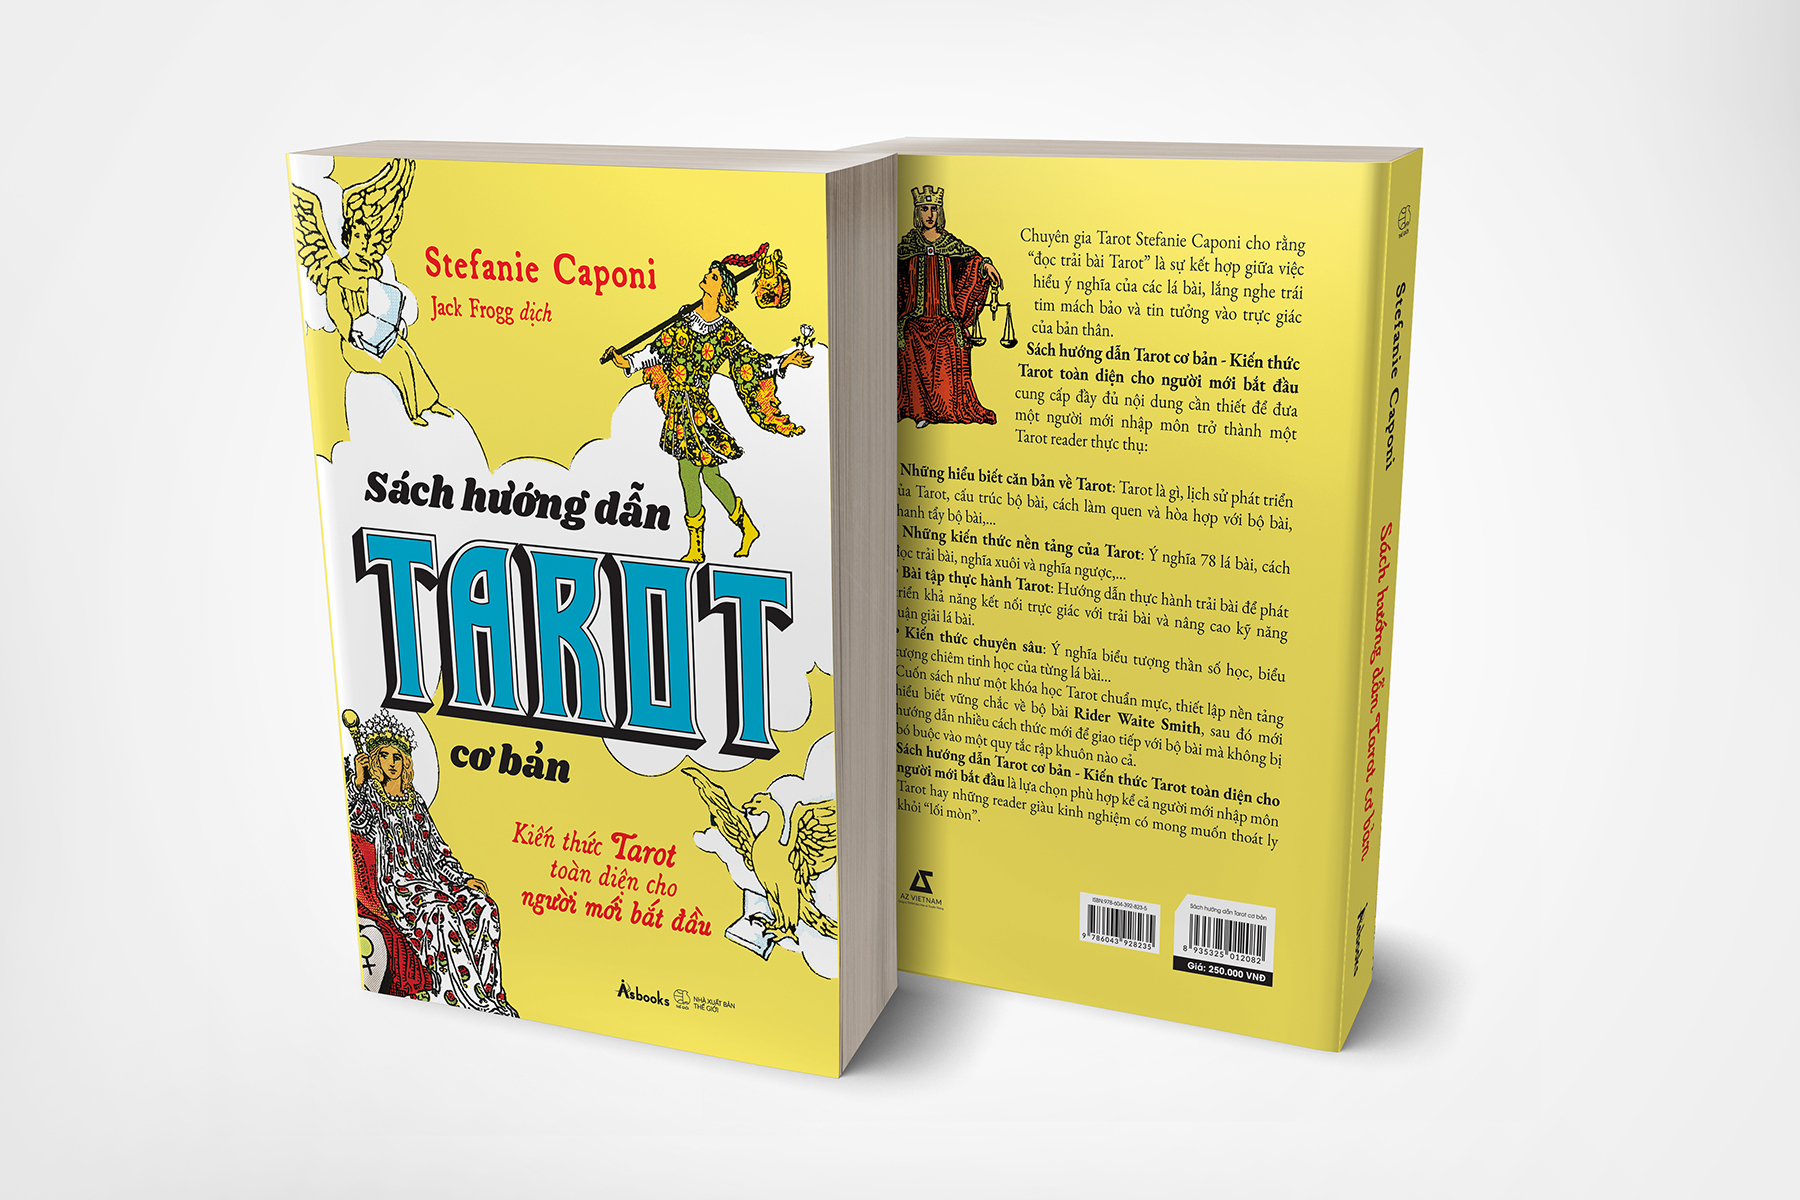 Sách Hướng Dẫn Tarot Cơ Bản - Kiến Thức Tarot Toàn Diện Cho Người Mới Bắt Đầu - Tặng Kèm Bộ The Rider Tarot Deck Pocket Size PDF